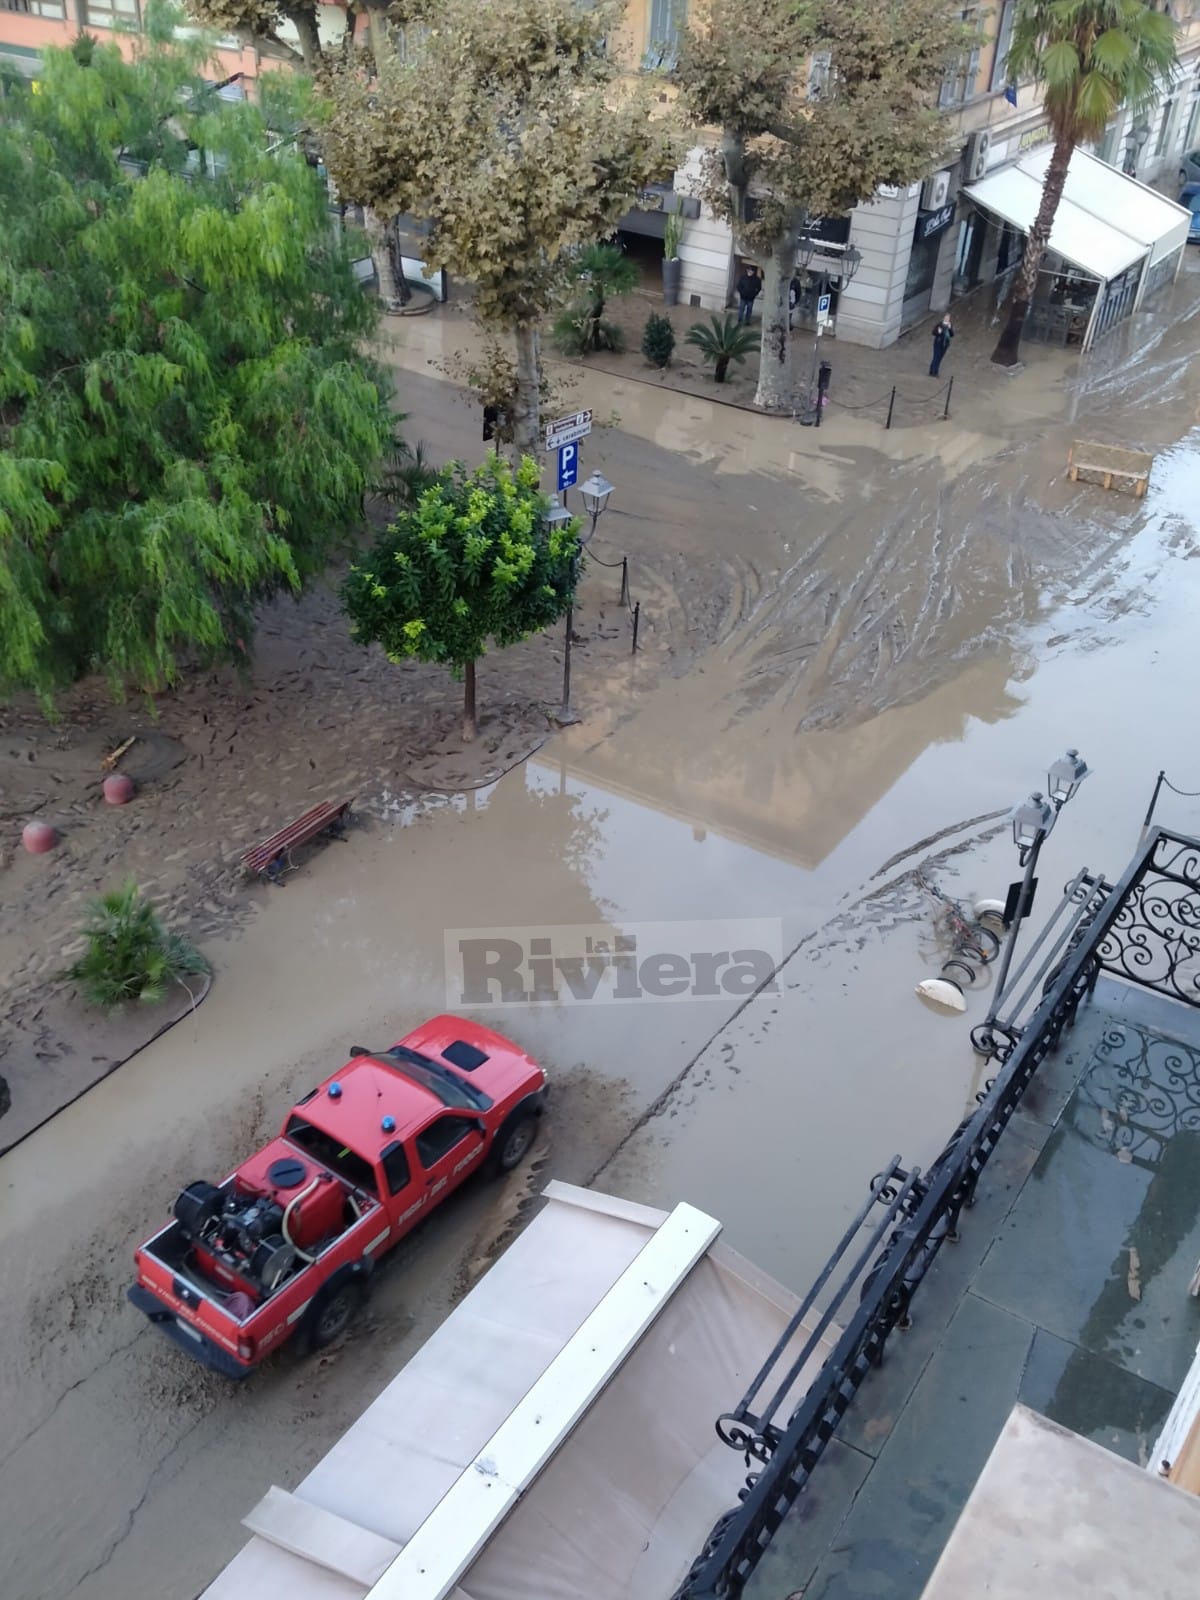 1 Alluvione Ventimiglia il giorno dopo esondazione fiume Roya maltempo 2-3 ottobre 2020 _09